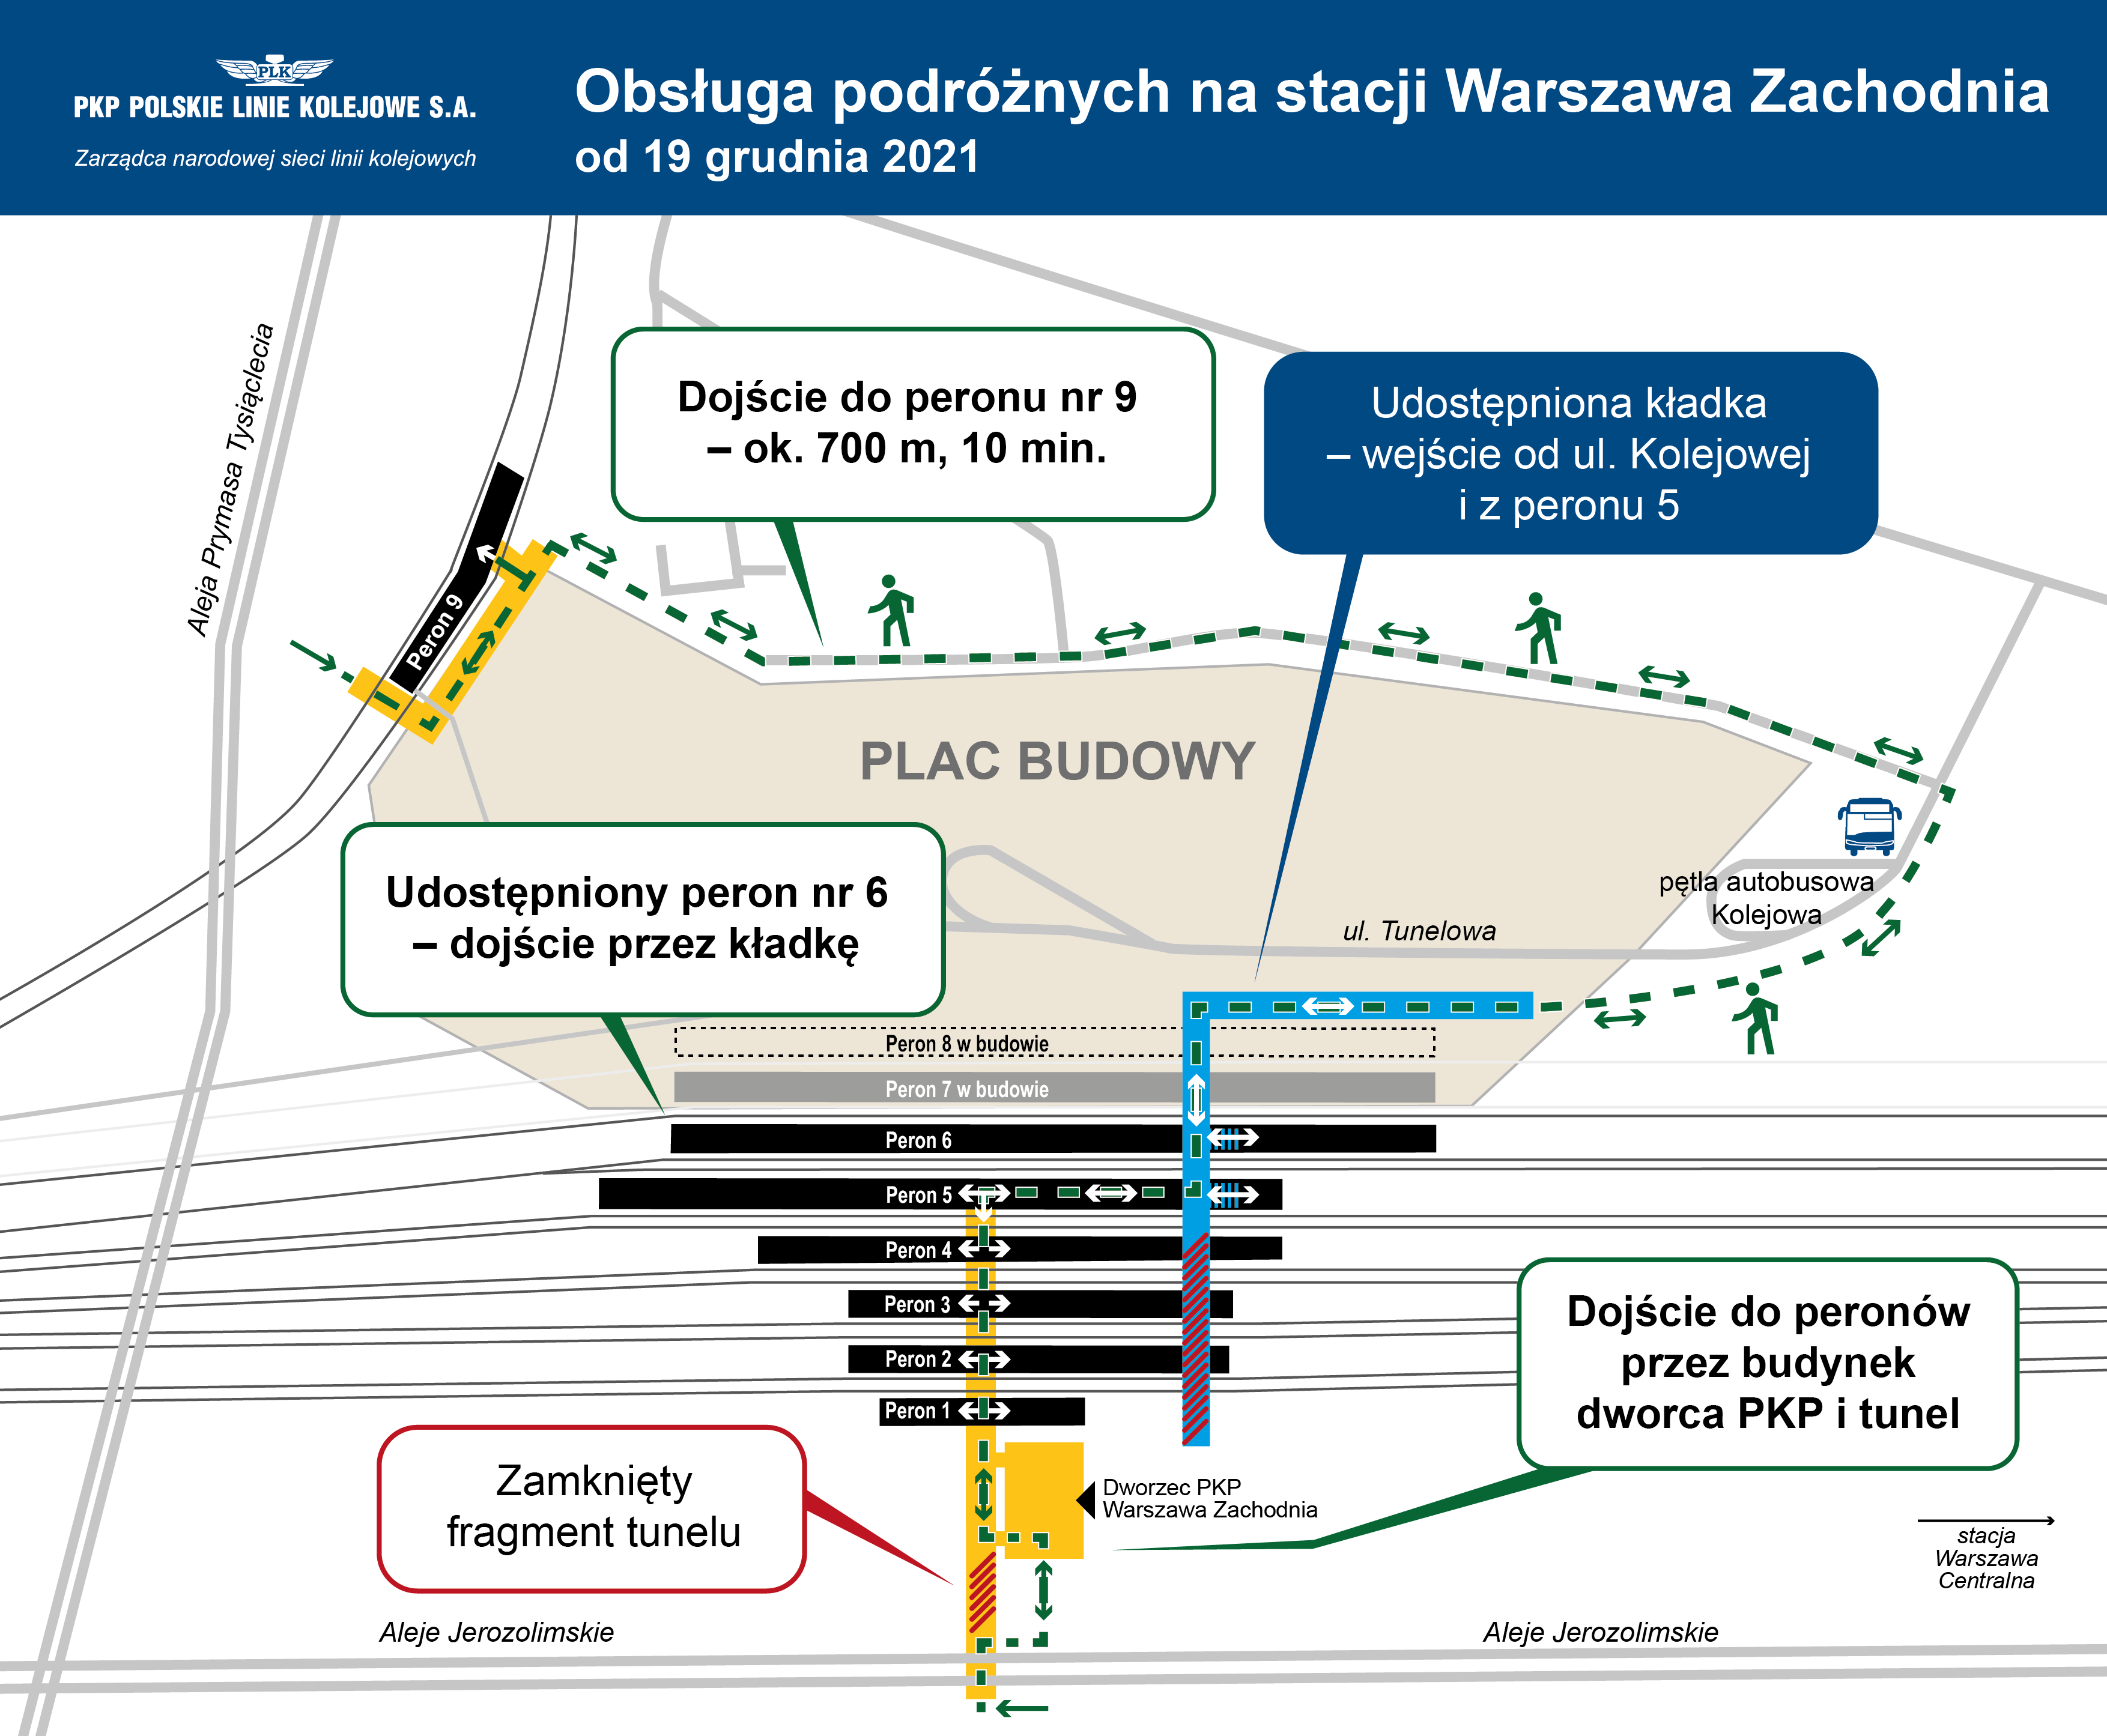 Schemat remontu peronów na dworcy Warszawa Zachodnia. Treść obrazka opisana powyżej.